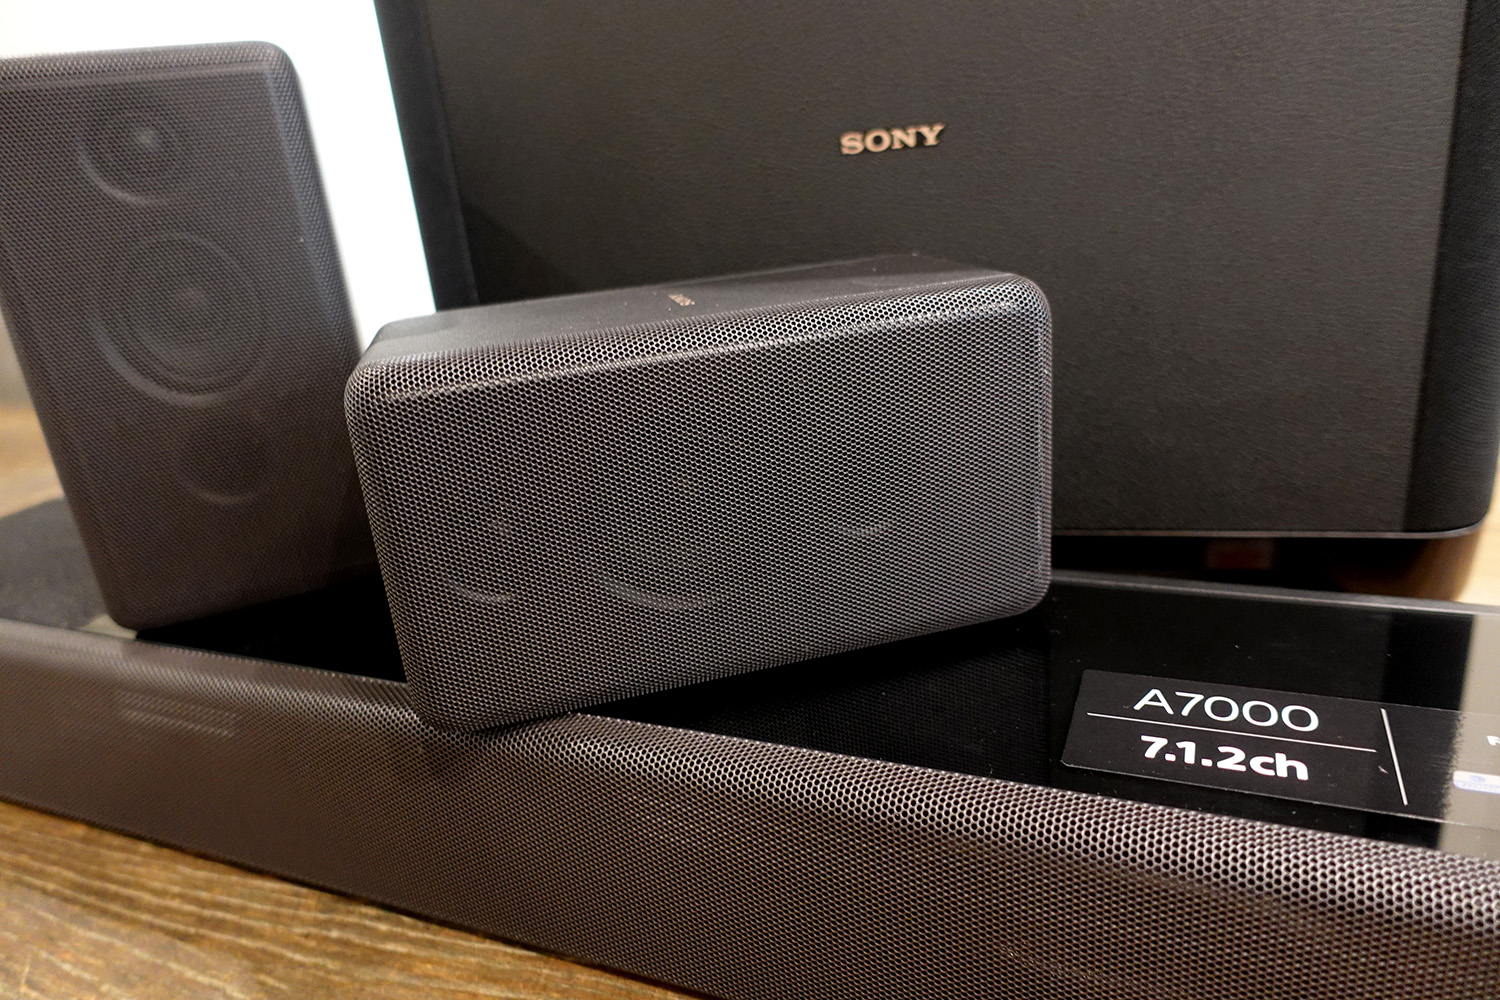 Évaluation de la barre de son HT-A7000 de Sony - Blogue Best Buy